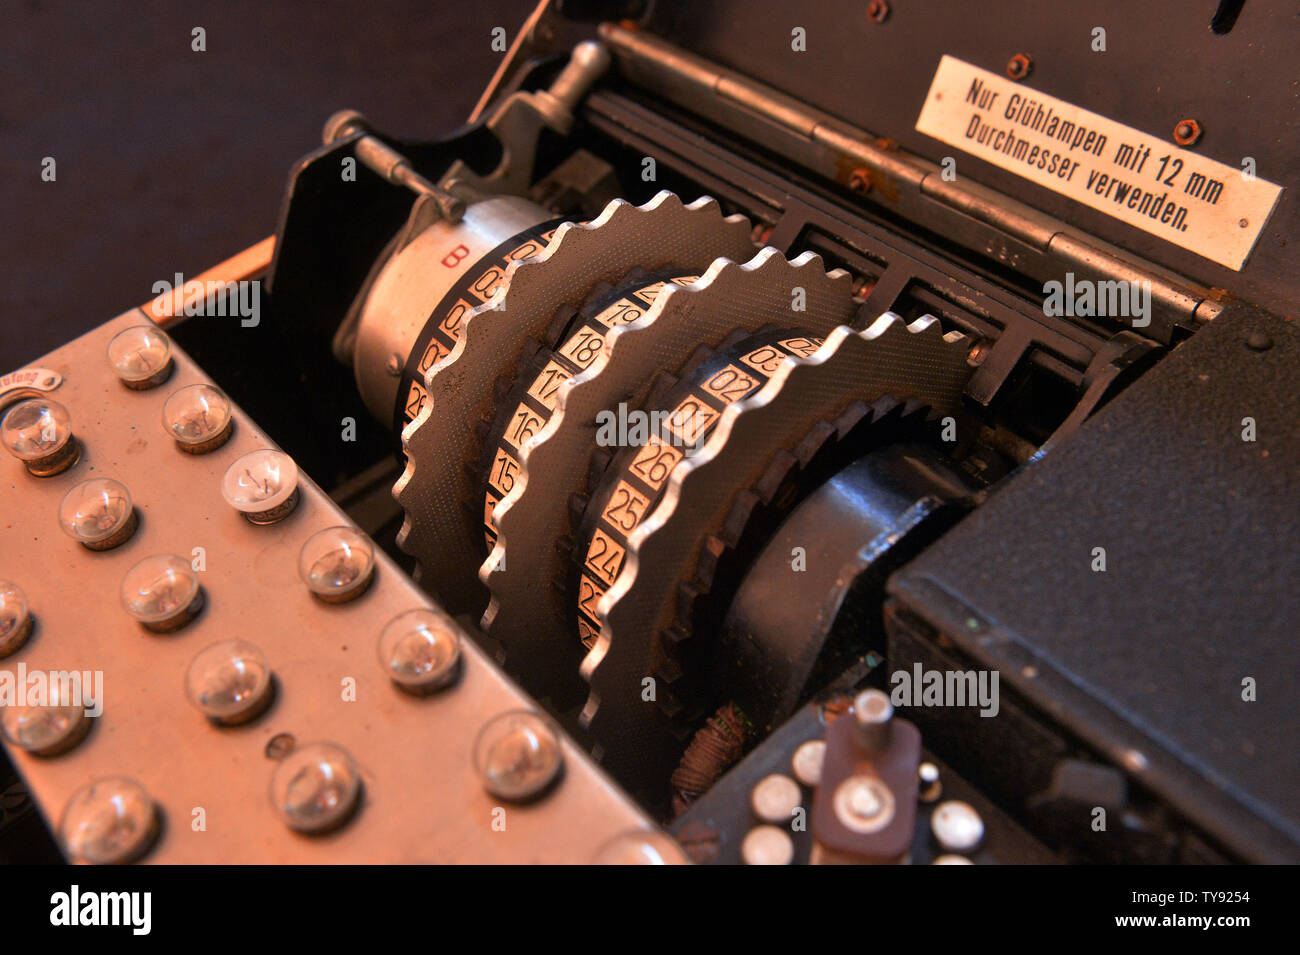 Eine seltene 3-cipher Rotor design Enigma Maschine (M3 von den Deutschen während des Zweiten Weltkriegs verwendet) (dargestellt) online am Mai 30, 2019 versteigert werden. Deutschland verwendet die Enigma Maschine von 1934 bis zum Ende des Krieges im Jahr 1945. Die Enigma Maschine könnte jagt die Buchstaben in eine von 17,576 Kombinationen mit Ausnahme der Verwendung von seinem ursprünglichen Schreiben. Wie in der von der Kritik gefeierten Film "die Nachahmung Spiel'', britischer Wissenschaftler Alan Turings Bemühungen, die Enigma zu dekodieren erlaubt die Verbündeten viele codierte Kommunikation die Deutsche Chiffren" zu dekonstruieren. Enigma Maschinen sind jetzt sehr Stockfoto